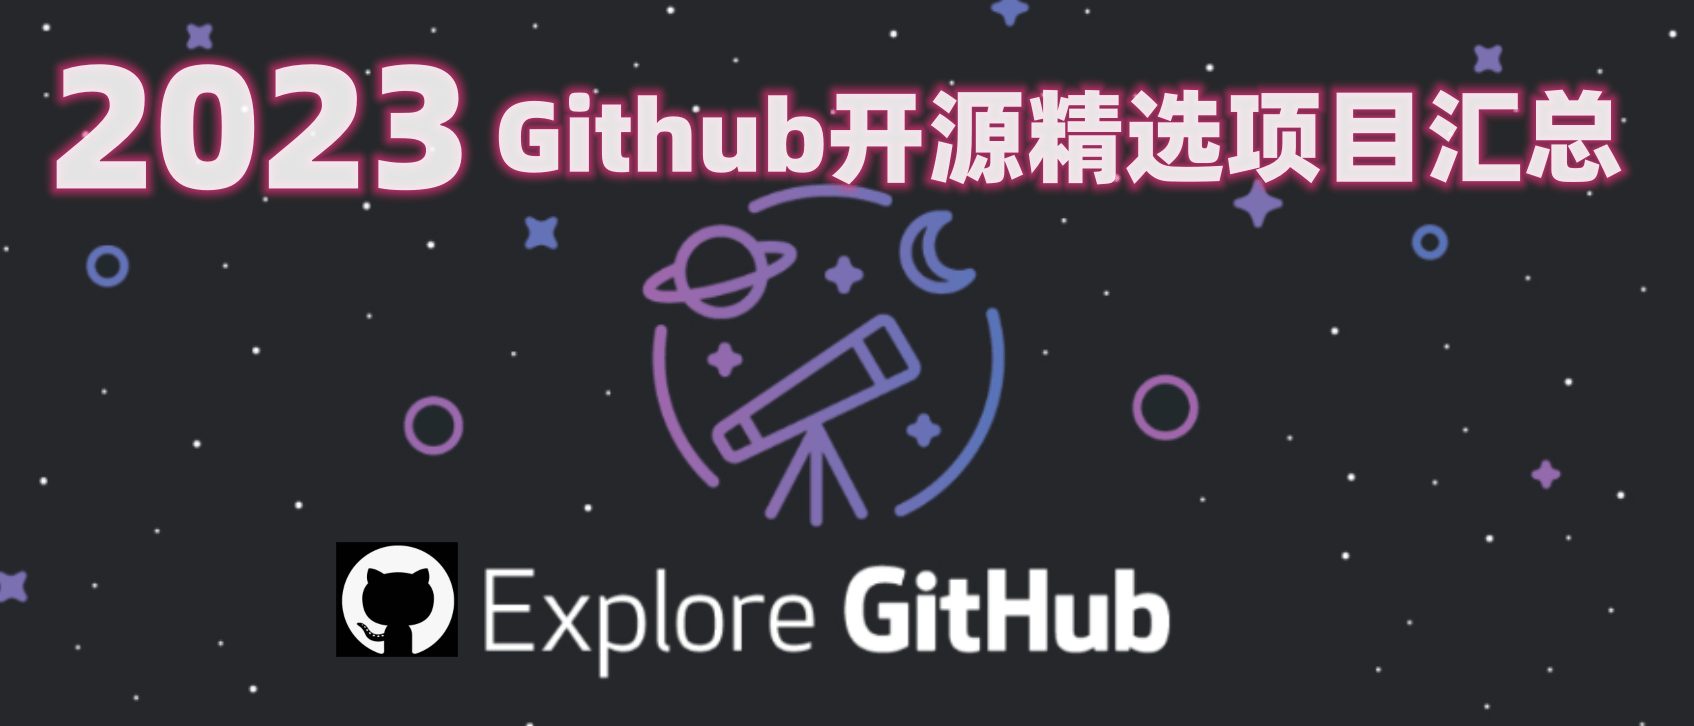 GitHub - OpenGithubs/Summary2023: 2023年精选开源项目汇总,分类汇总